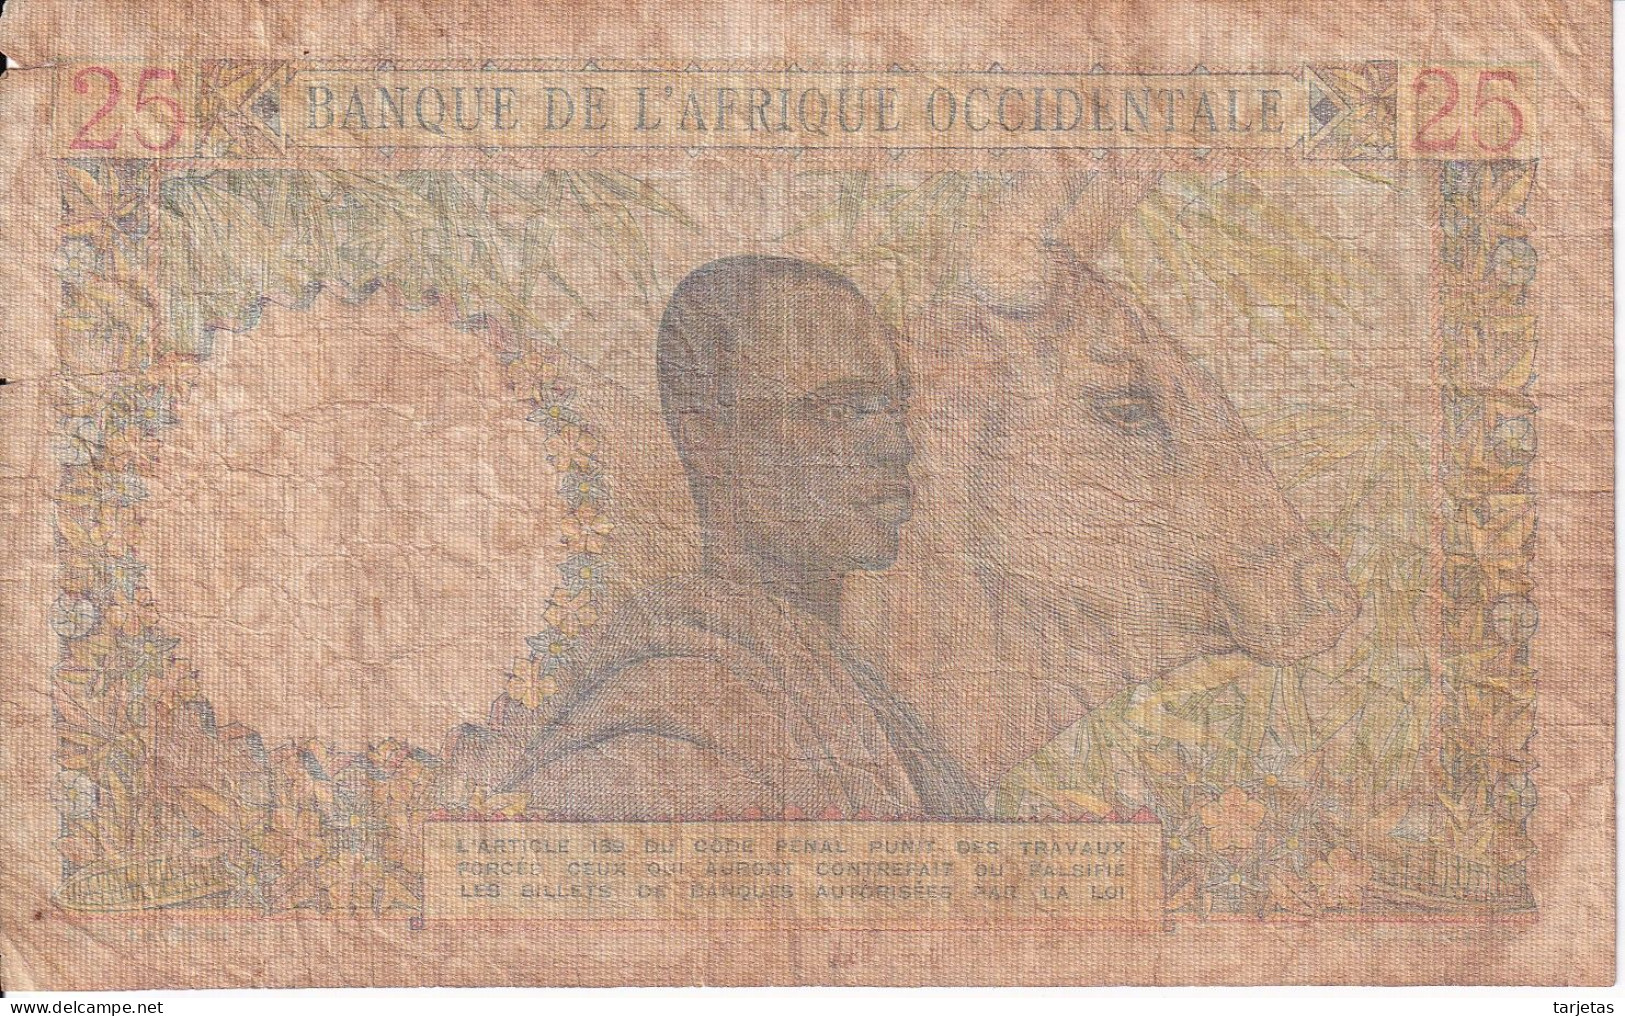 BILLETE DE AFRIQUE OCCIDENTALE DE 25 FRANCS DEL AÑO 1951 (BANKNOTE) - États D'Afrique De L'Ouest